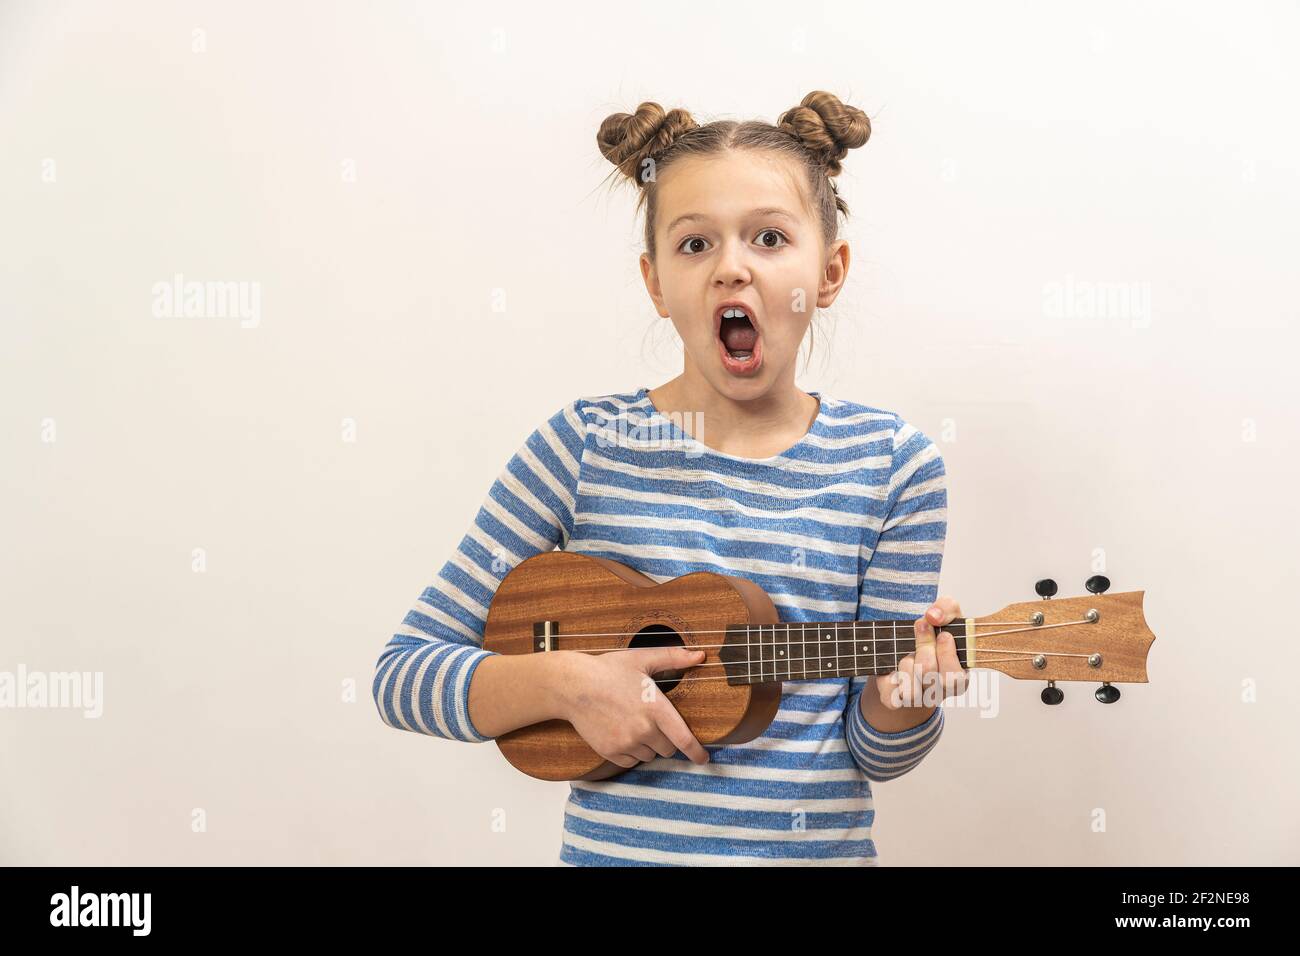 La ragazza canta e suona l'ukulele. Il bambino ride, si pone per la macchina fotografica e gode la musica. Imparare a giocare ukuleles. Foto Stock